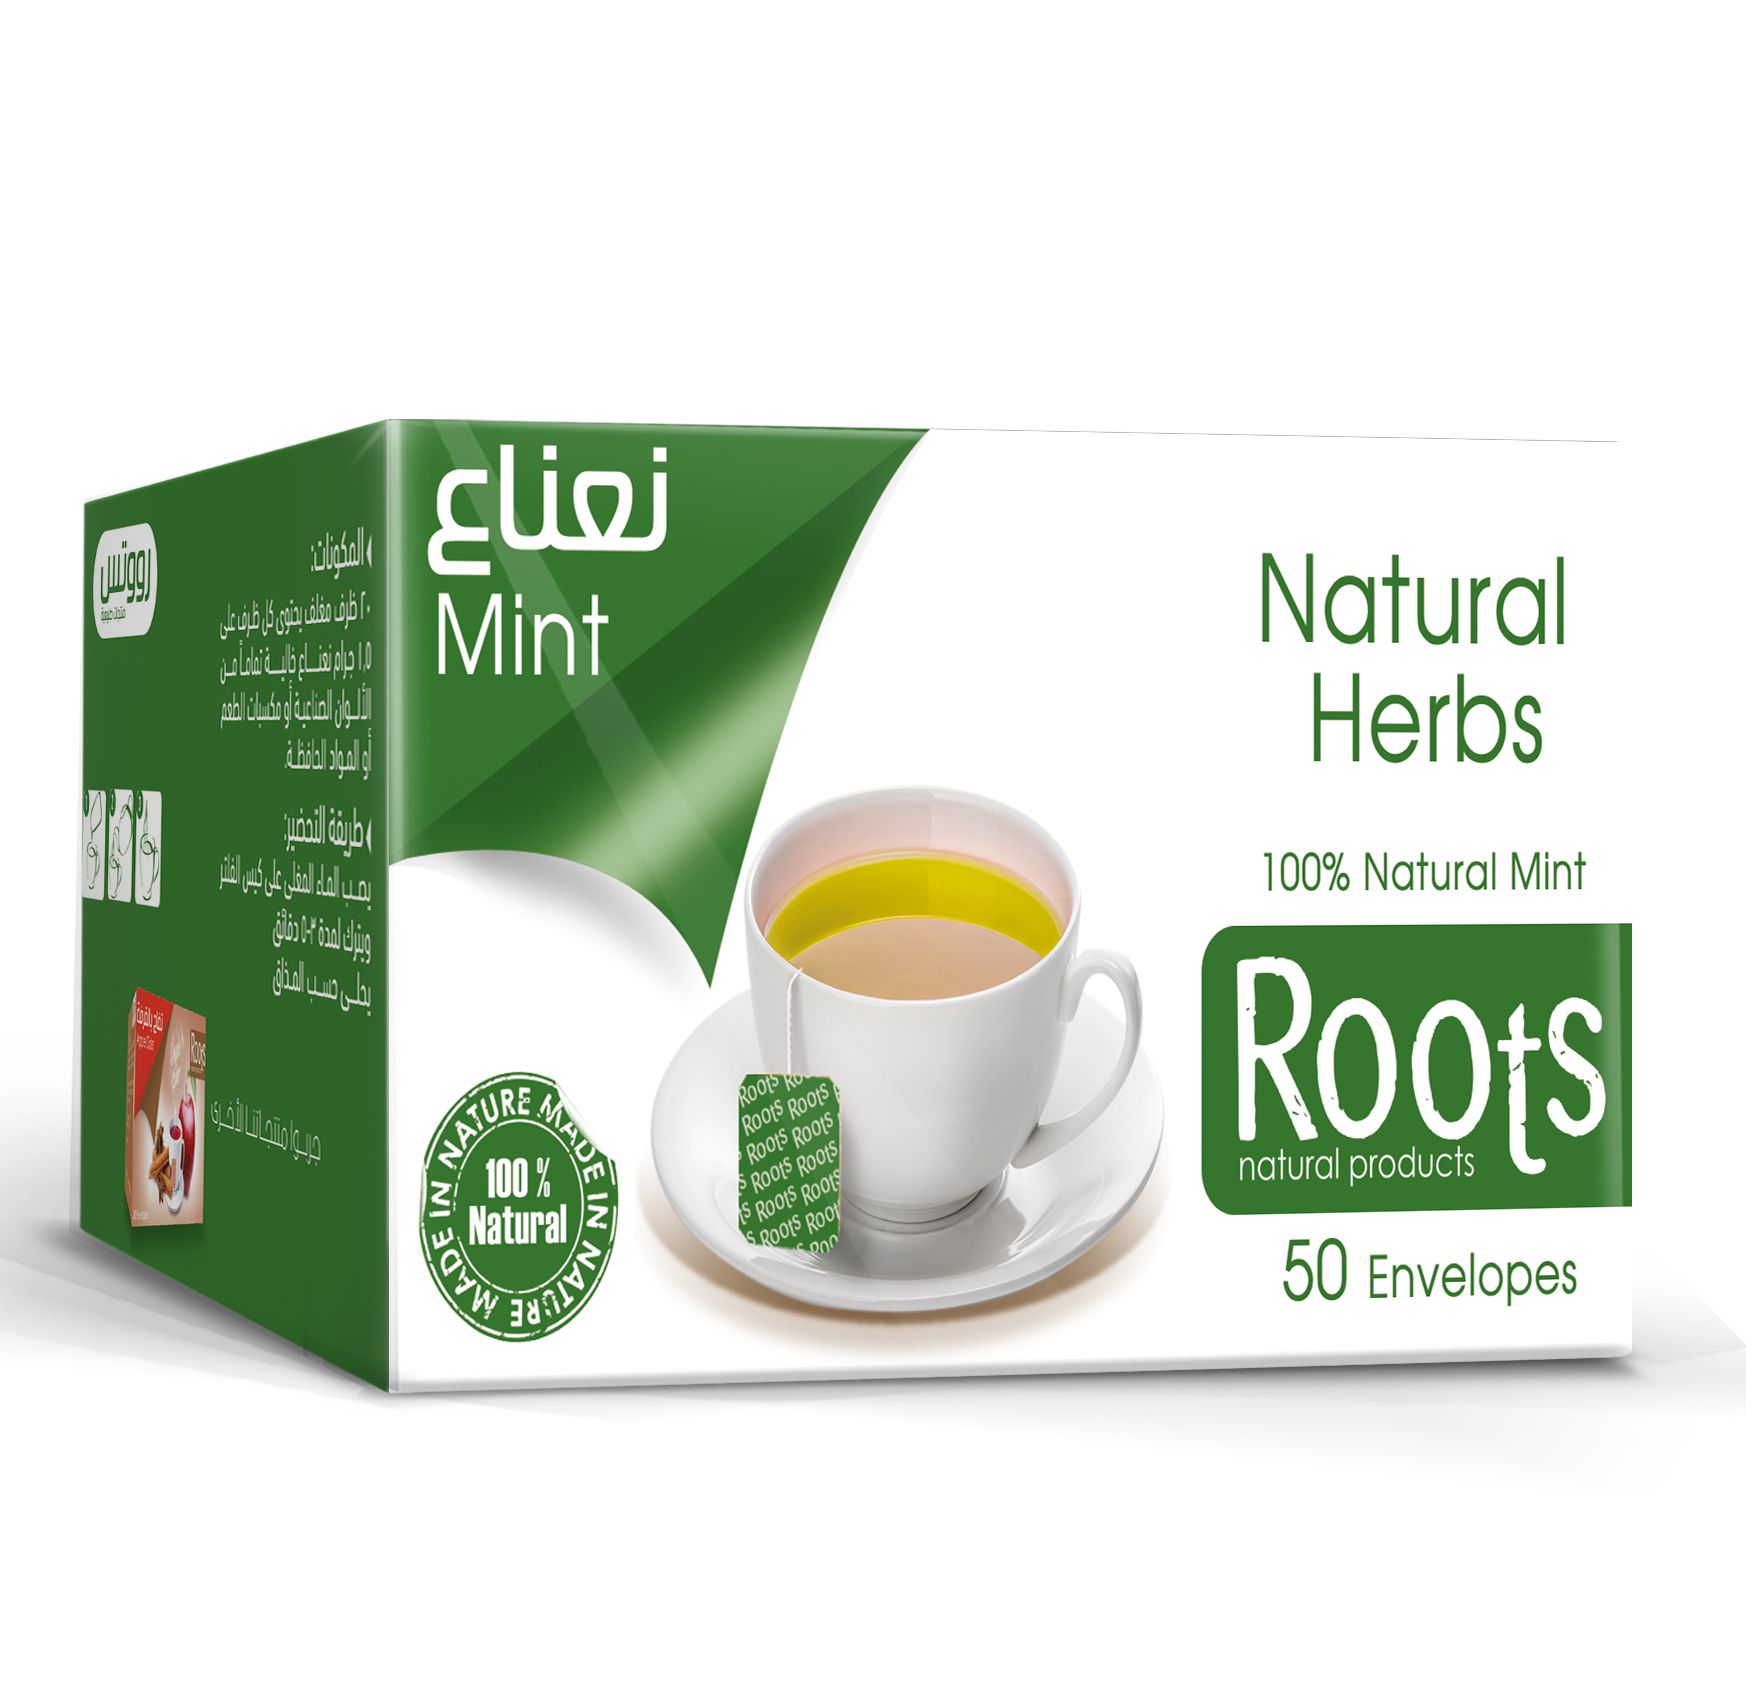 Green Tea with Mint - 12 Envelops